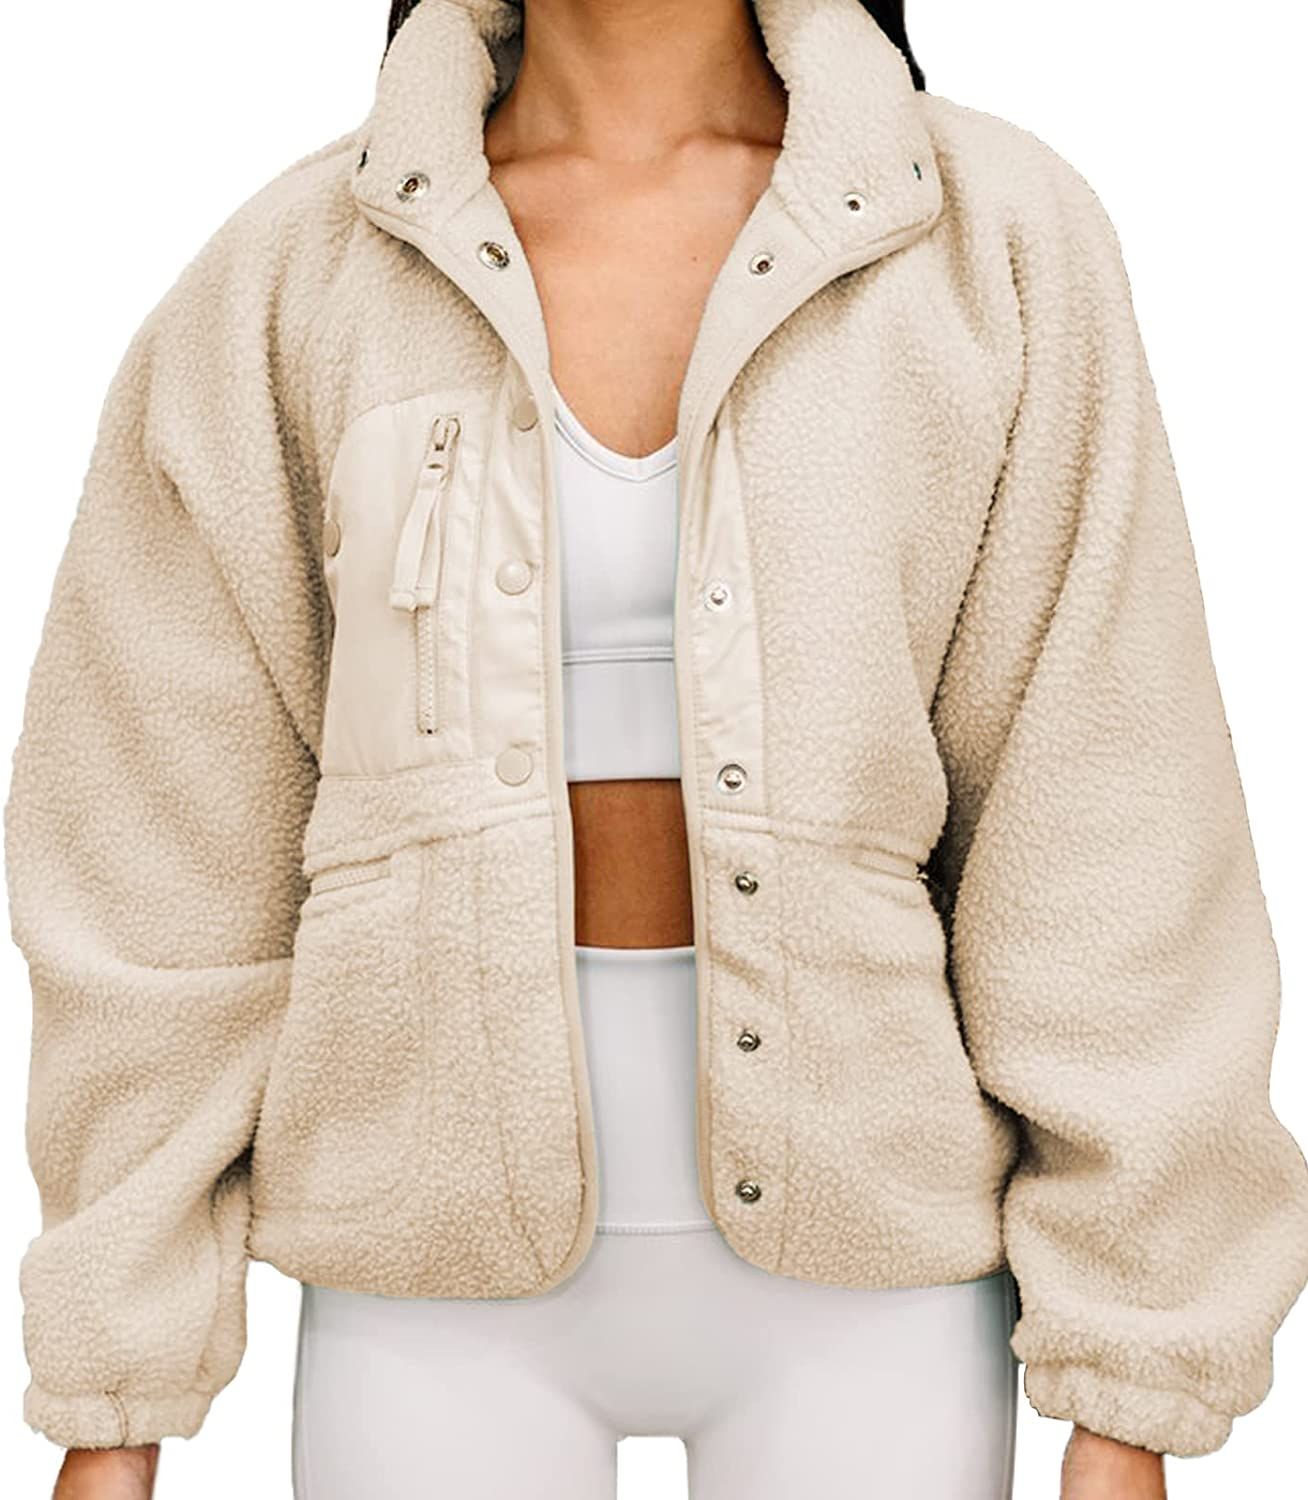 Womens Winter Coats Casual Lapel Long Sleeve Fleece Faux Fur Jacket (beige, XL) at Amazon Women's... | Amazon (US)